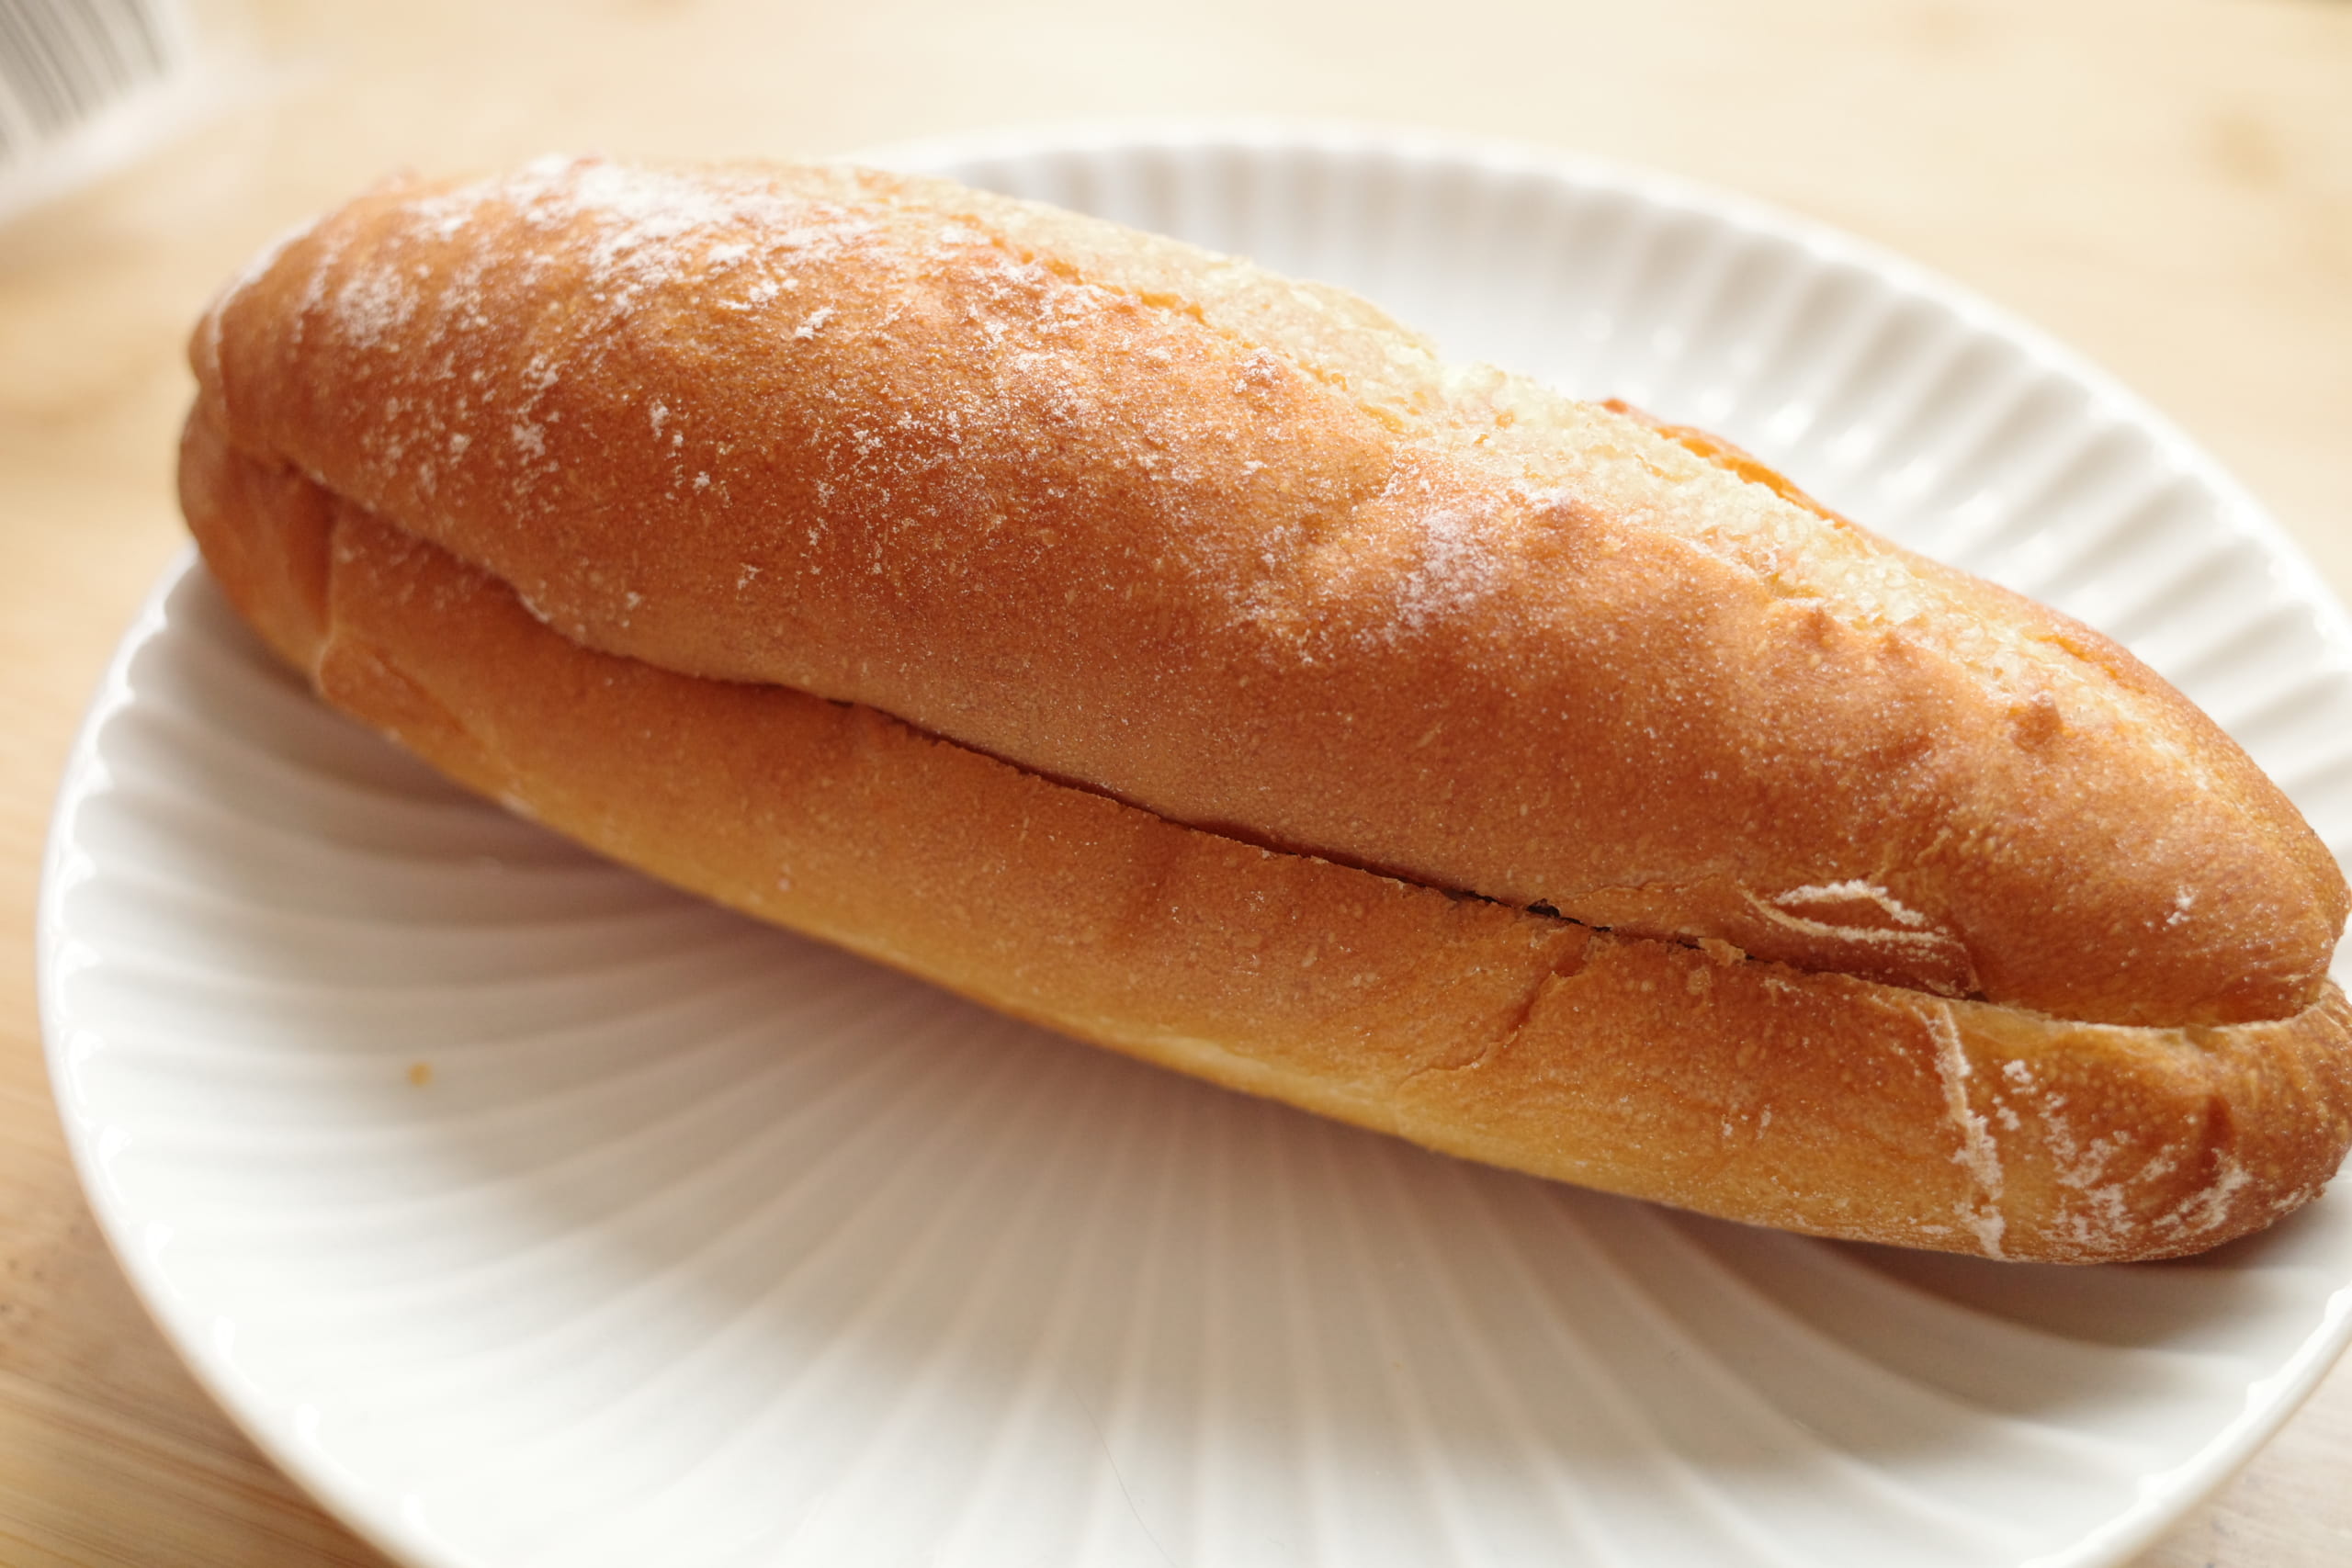 【ローソン新商品ルポ】つぶつぶあんこと濃厚バターのリッチなパン「マチノパン　あんことバターのフランスパン」